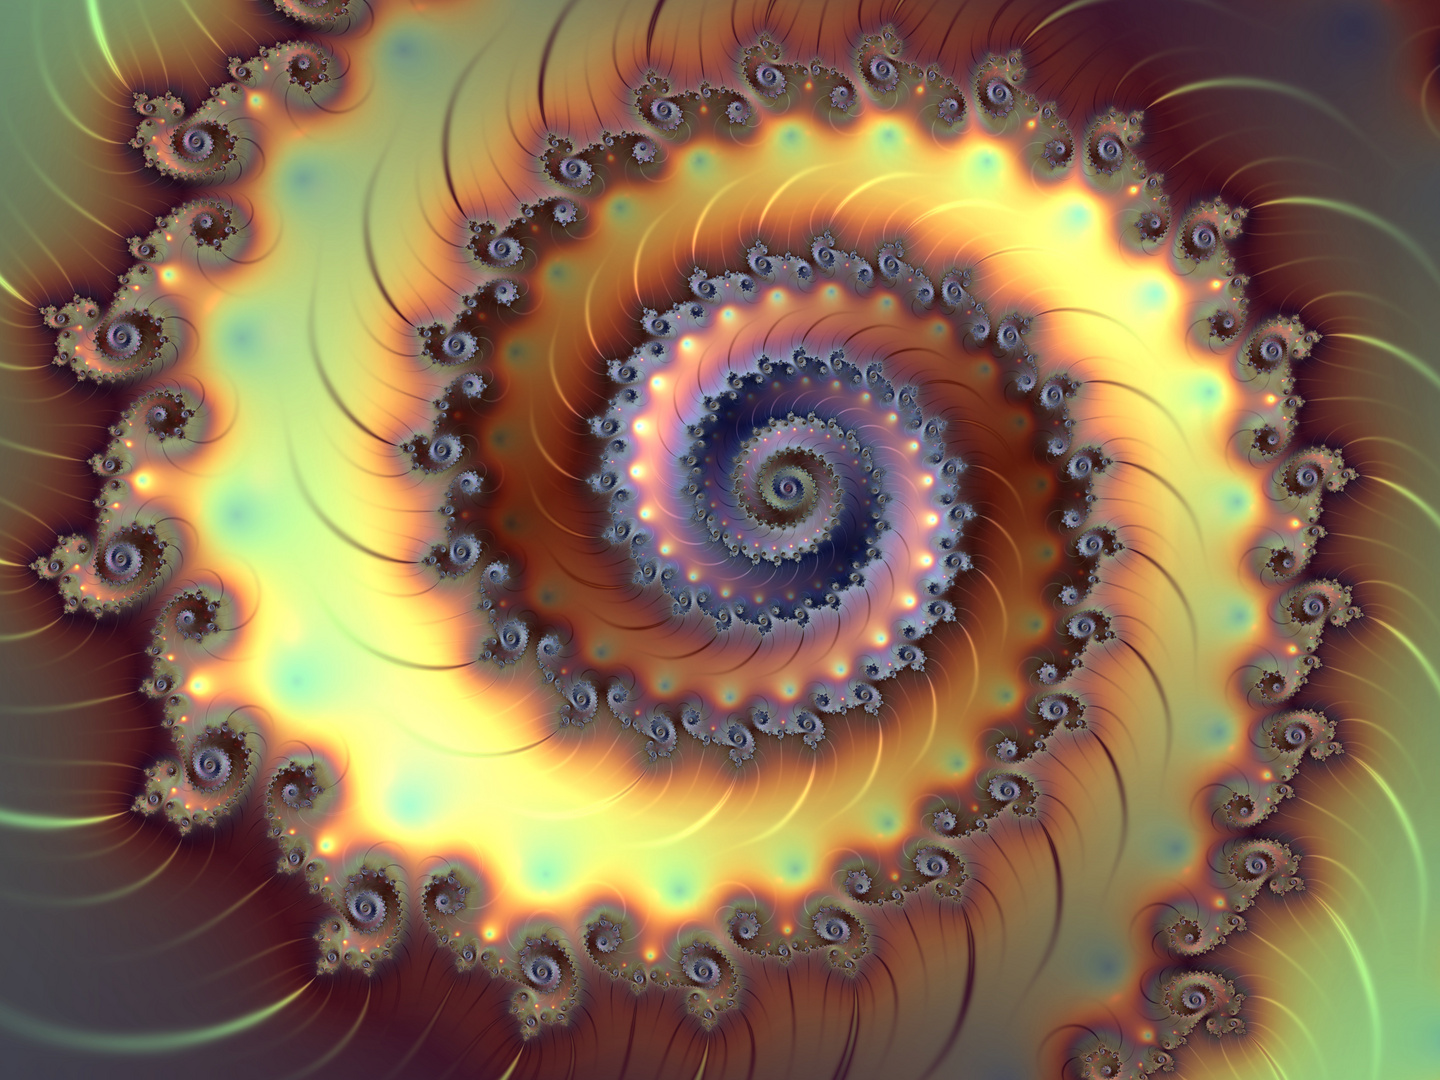 Endless spiral